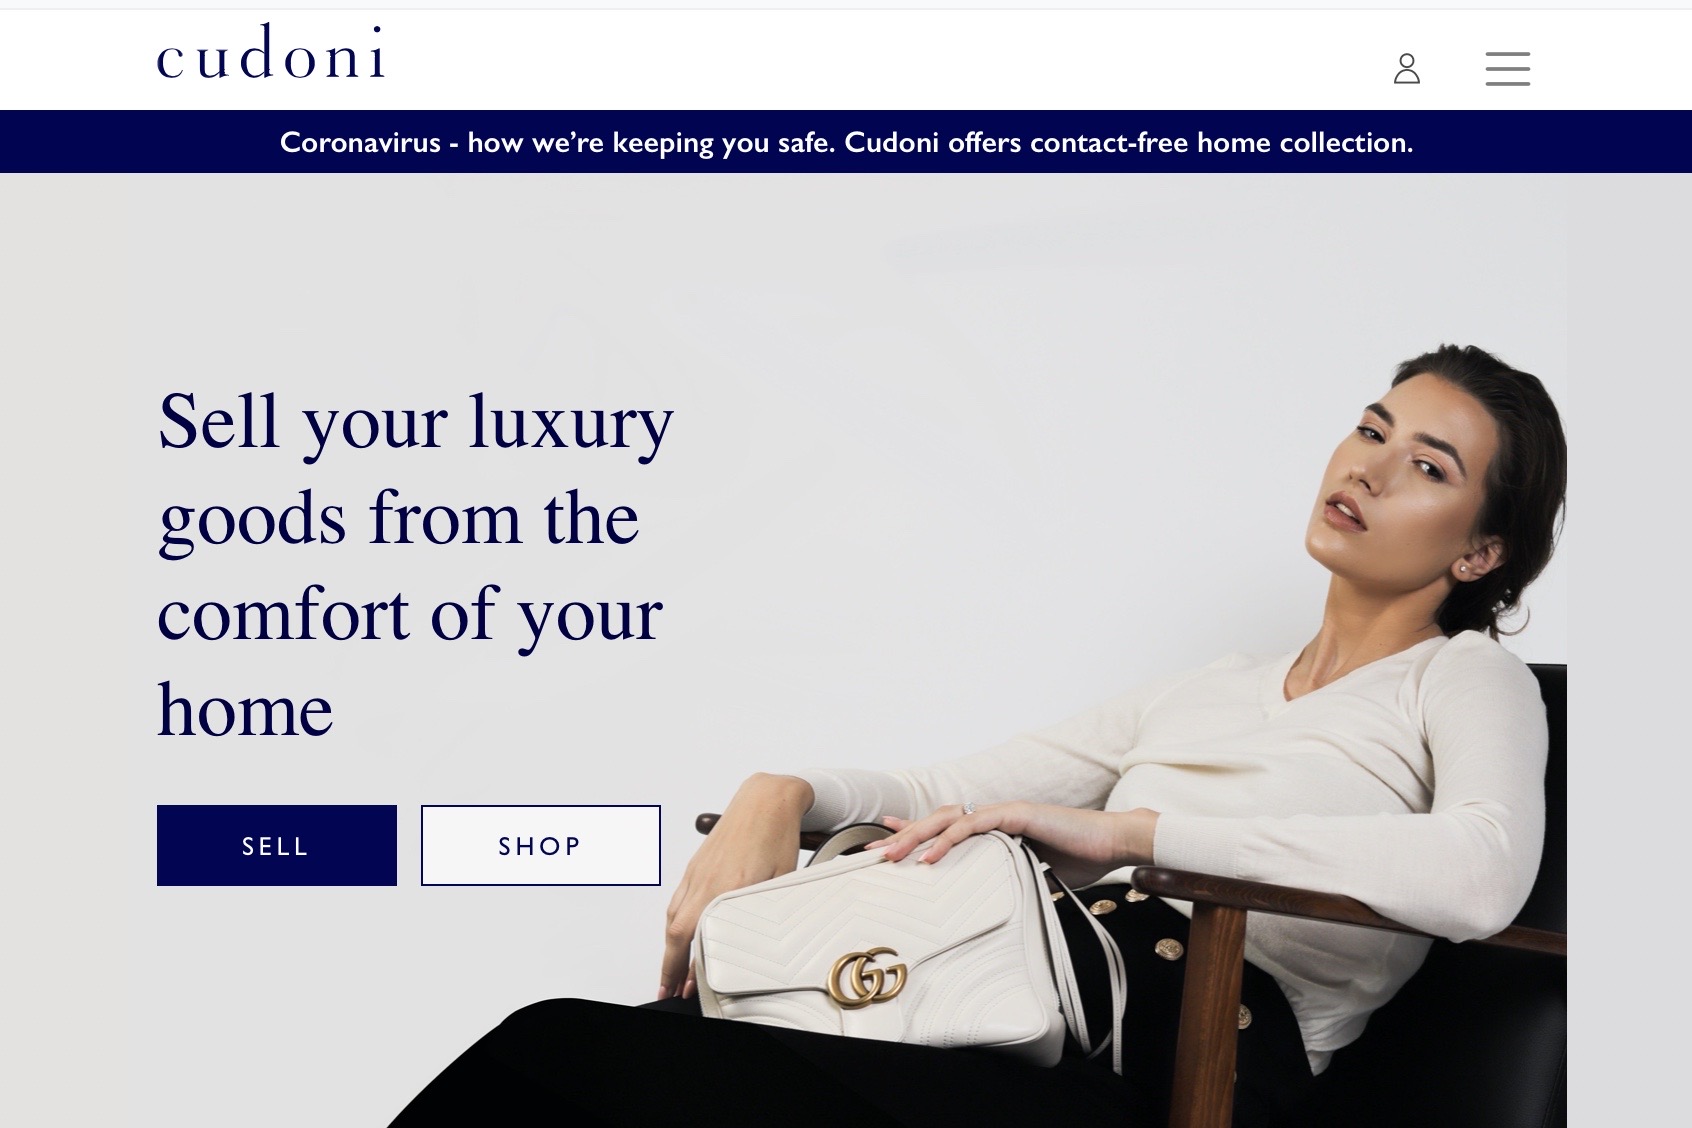 二手奢侈品转售平台 Cudoni 获国际投资者460万英镑投资